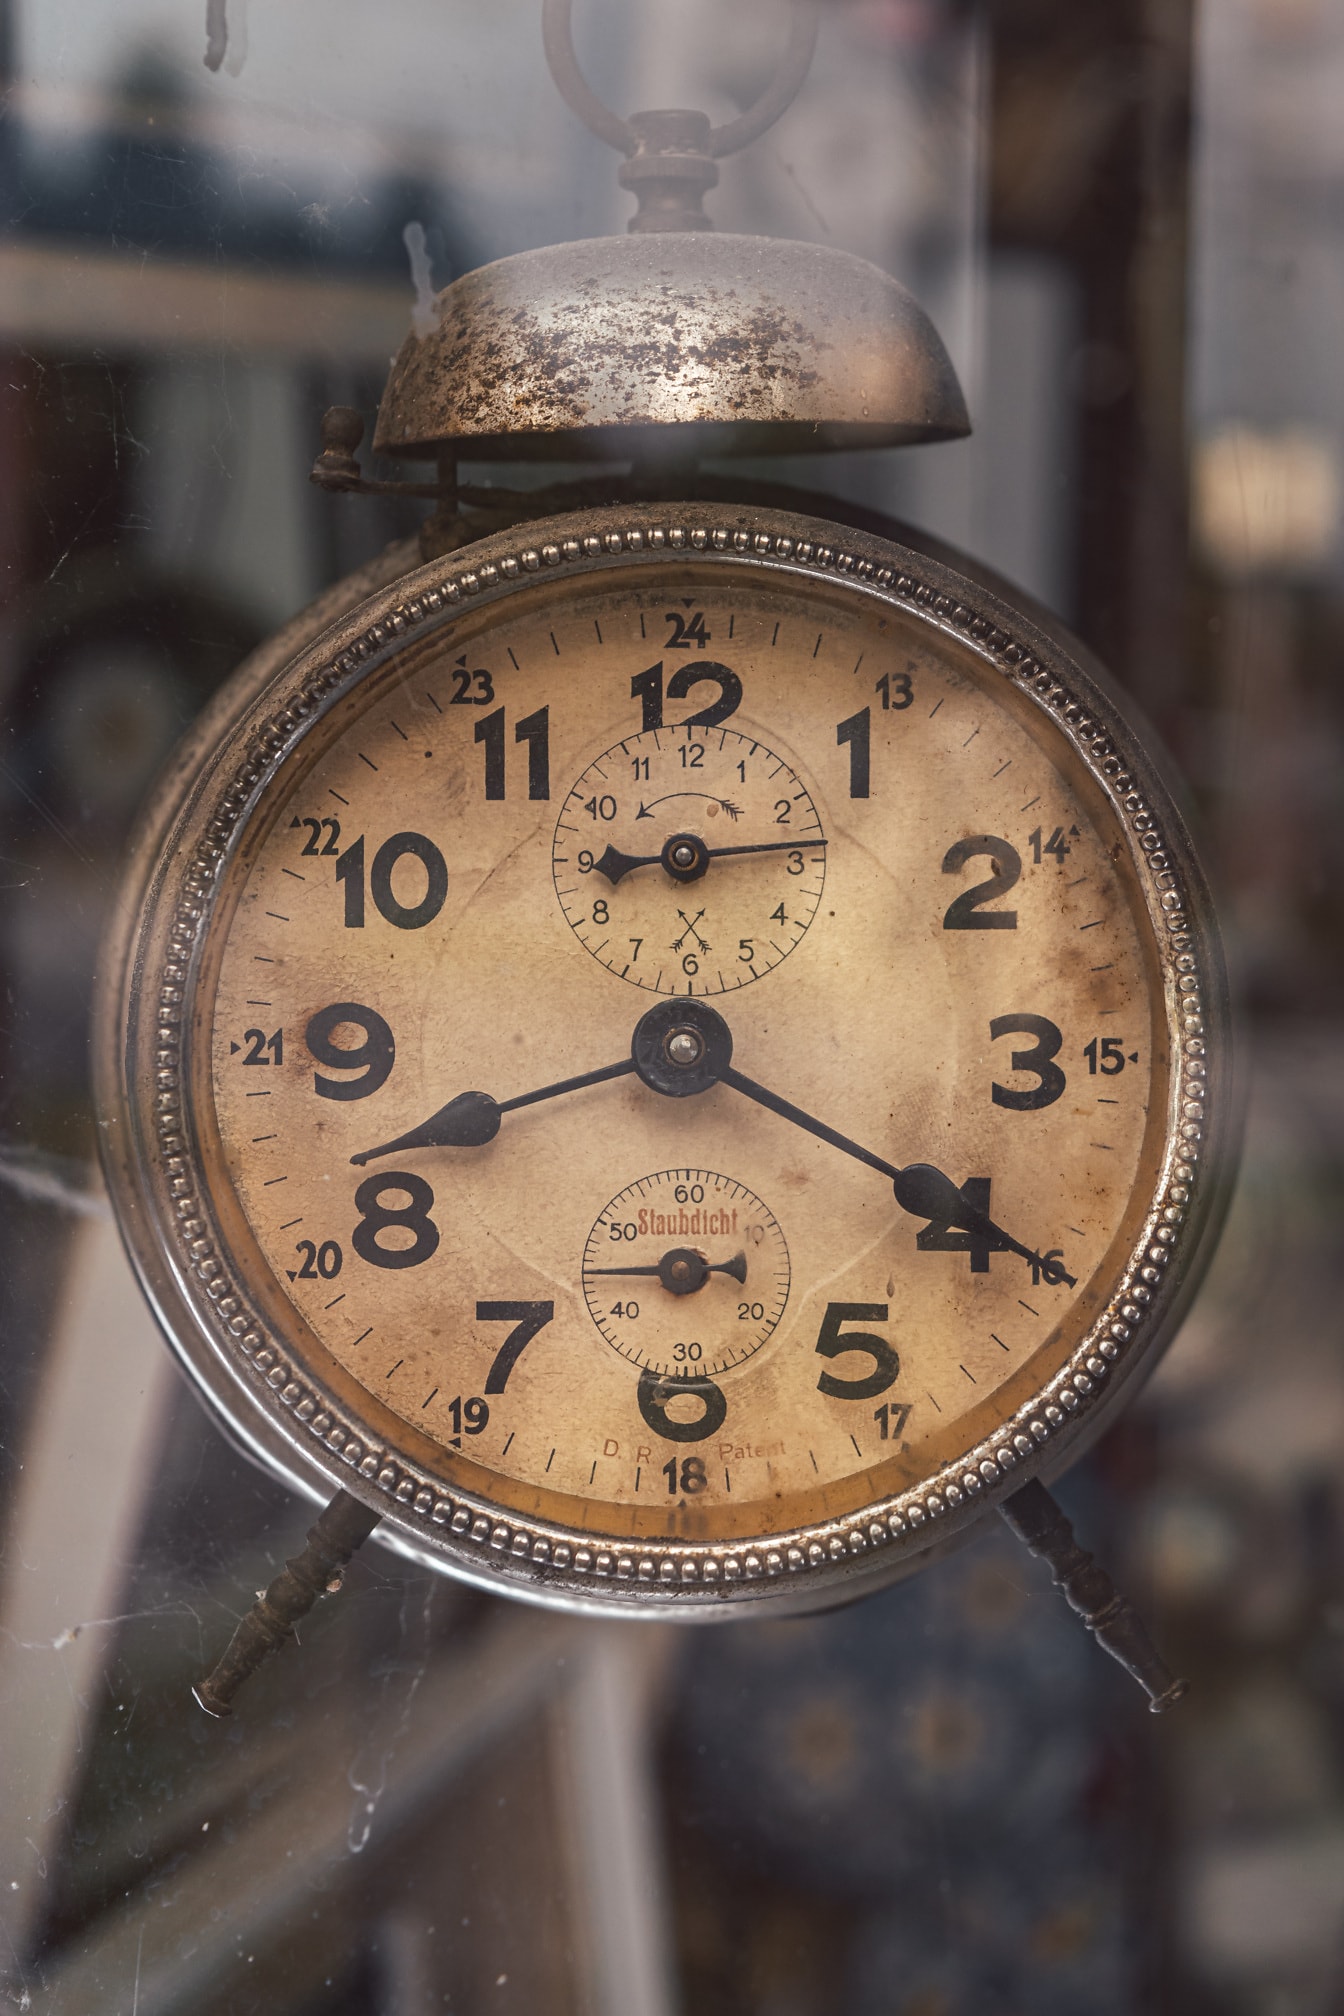 Primer plano del mecanismo de reloj de pulsera vintage